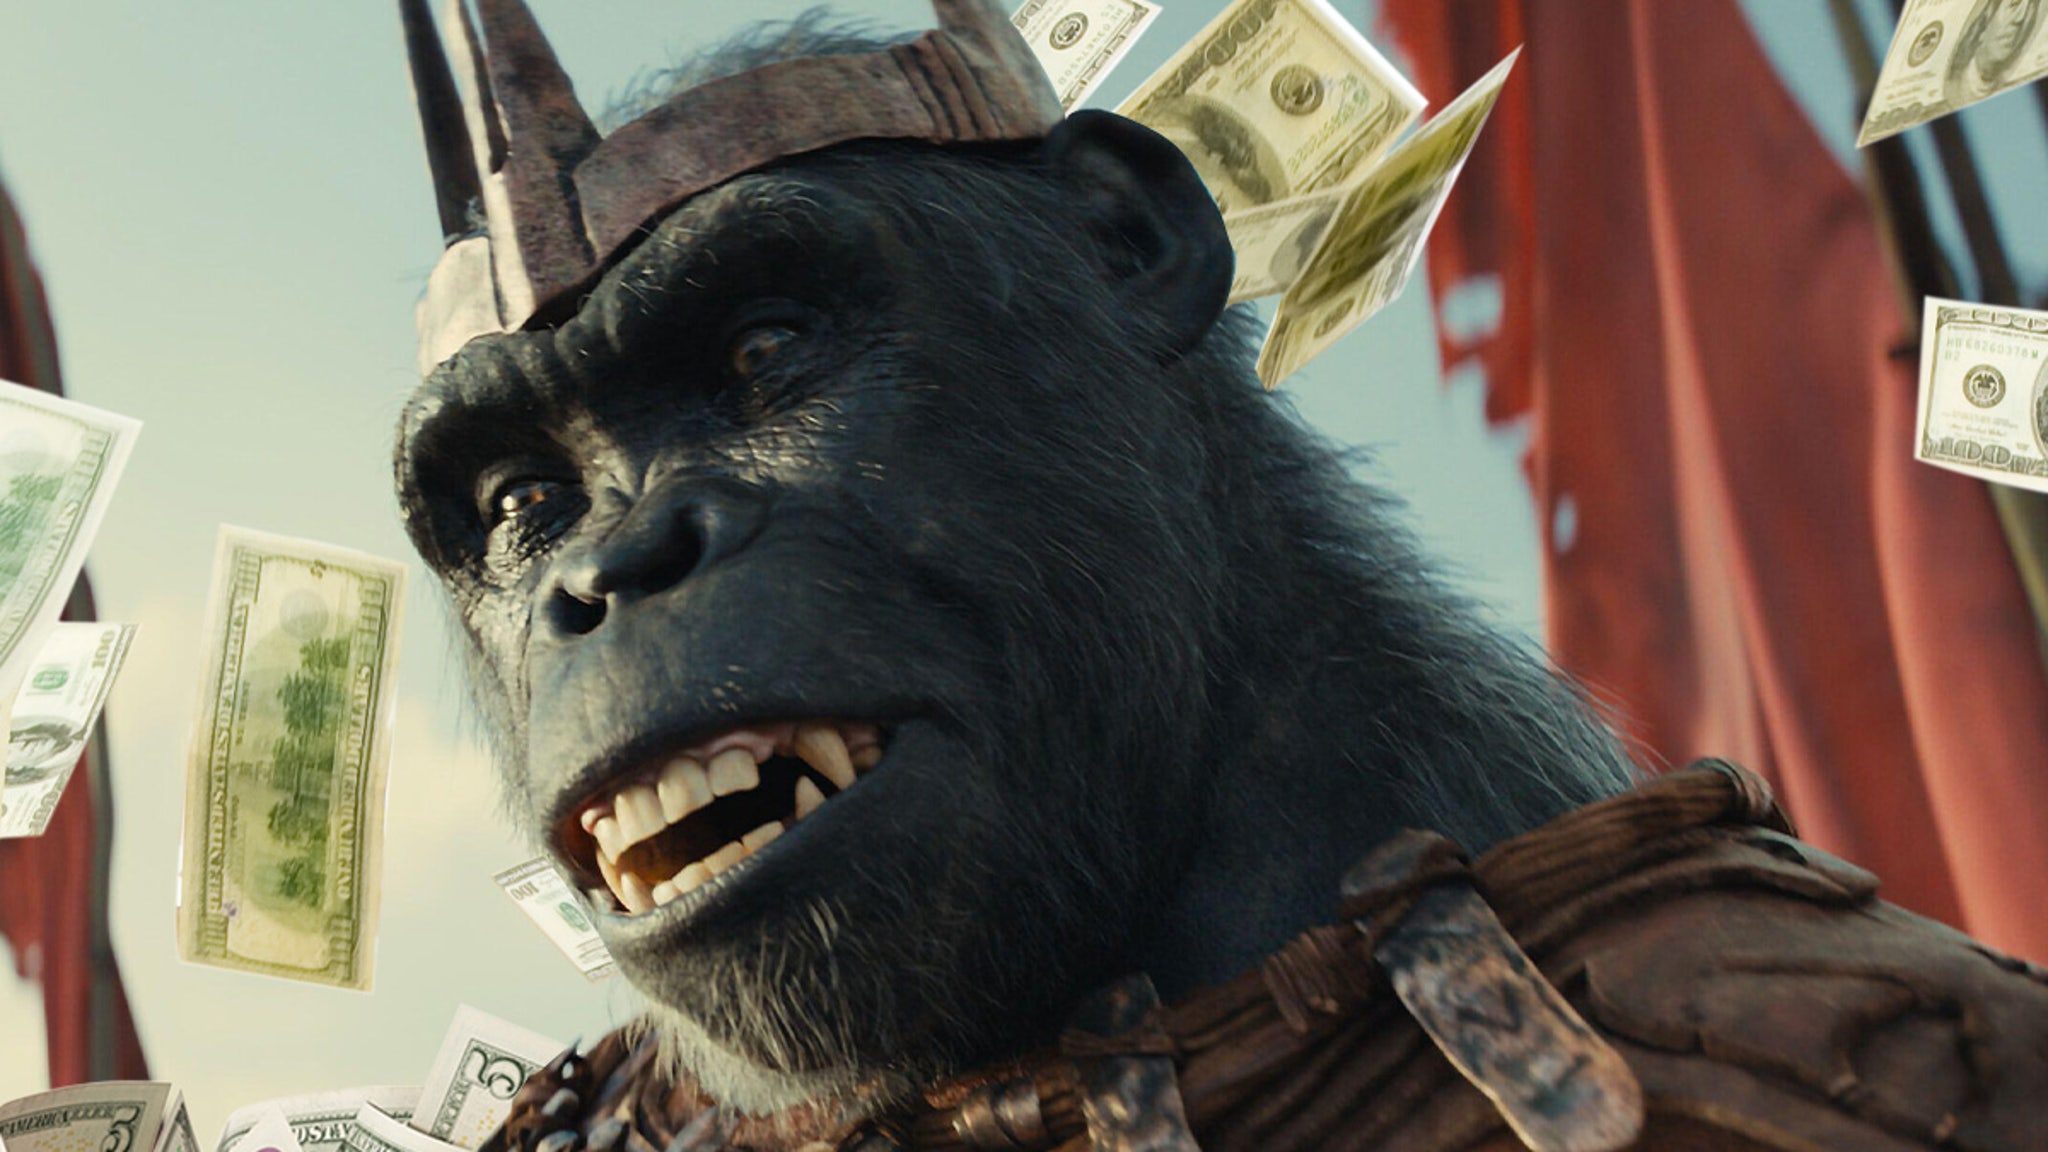 Le “Royaume de la planète des singes” atteint d’immenses hauteurs au box-office